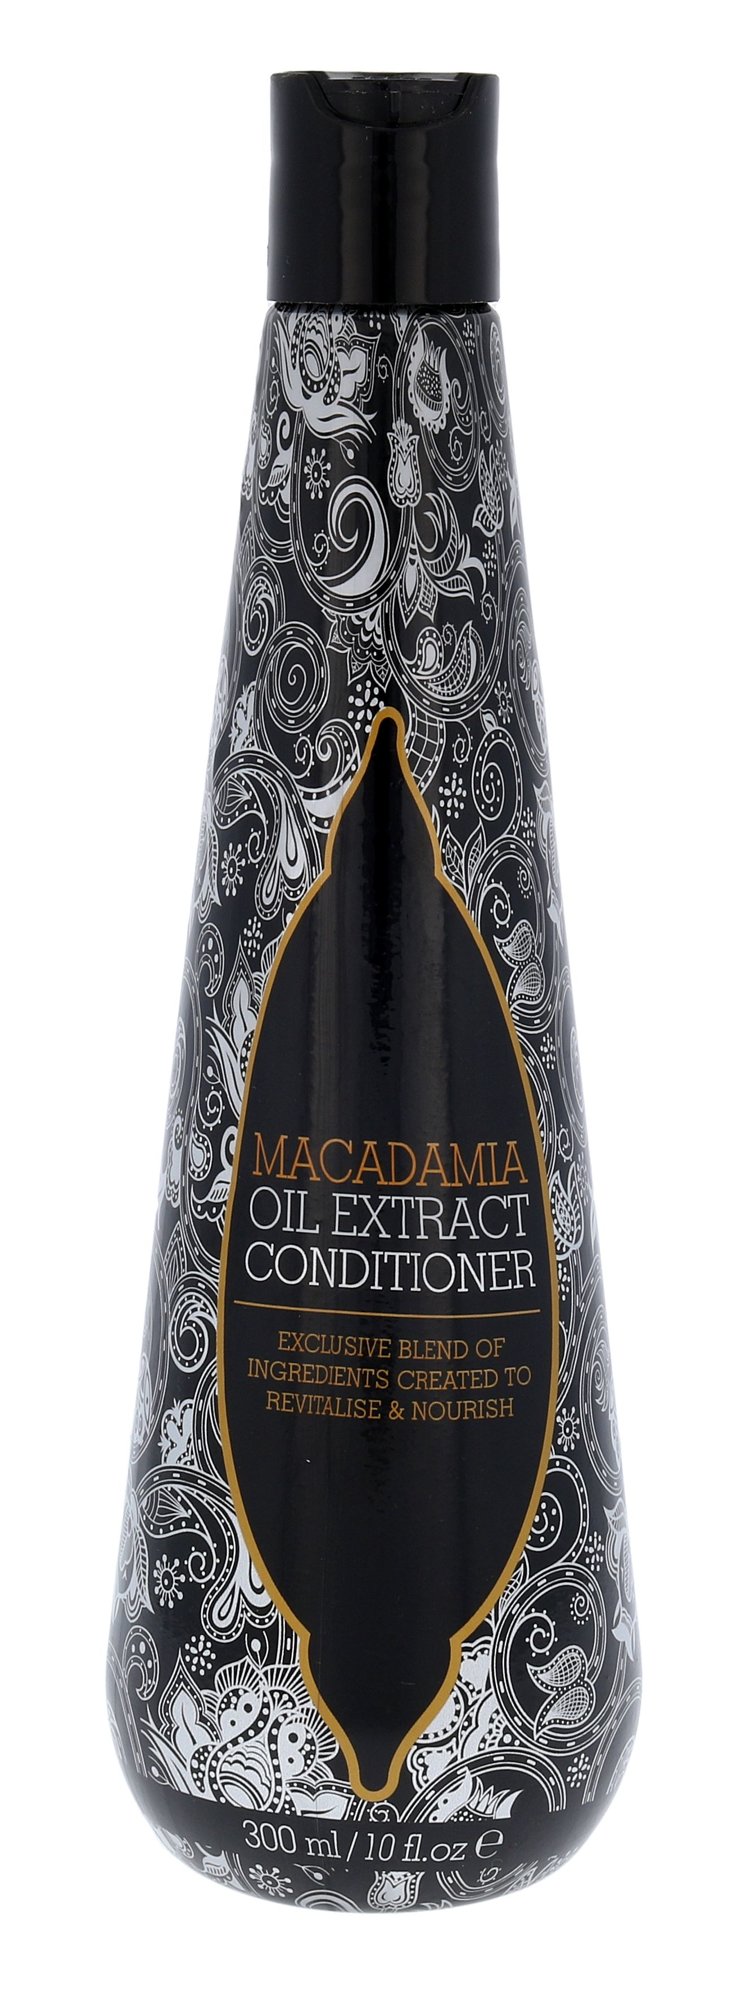 Macadamia Oil Extract Conditioner